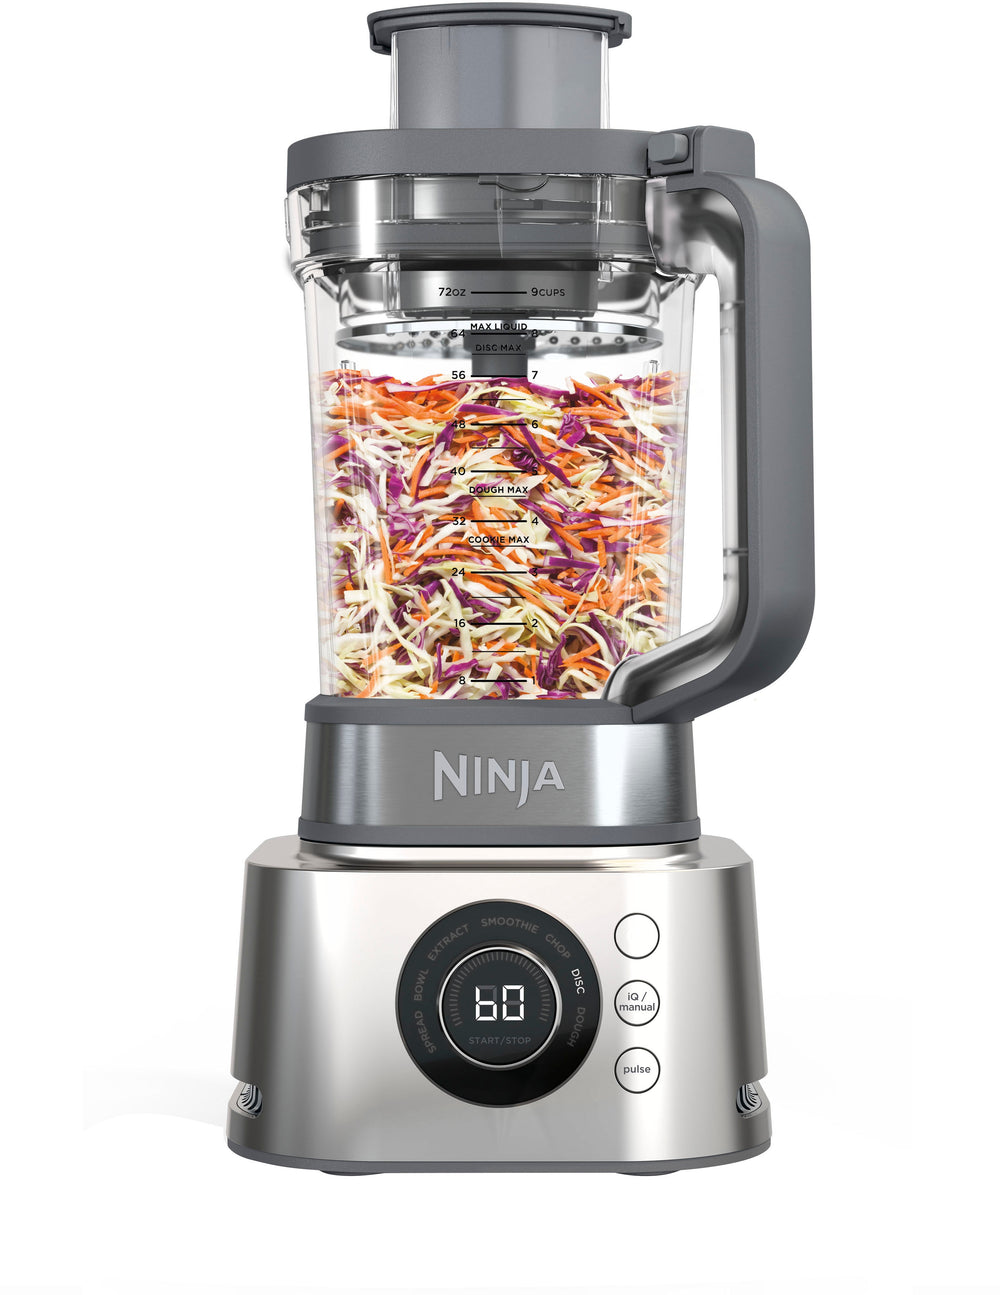 Ninja - Foodi Power Blender Ultimate System 72-Oz. Blender, Smoothie Bowl Maker, Food Processor - Platinum_1